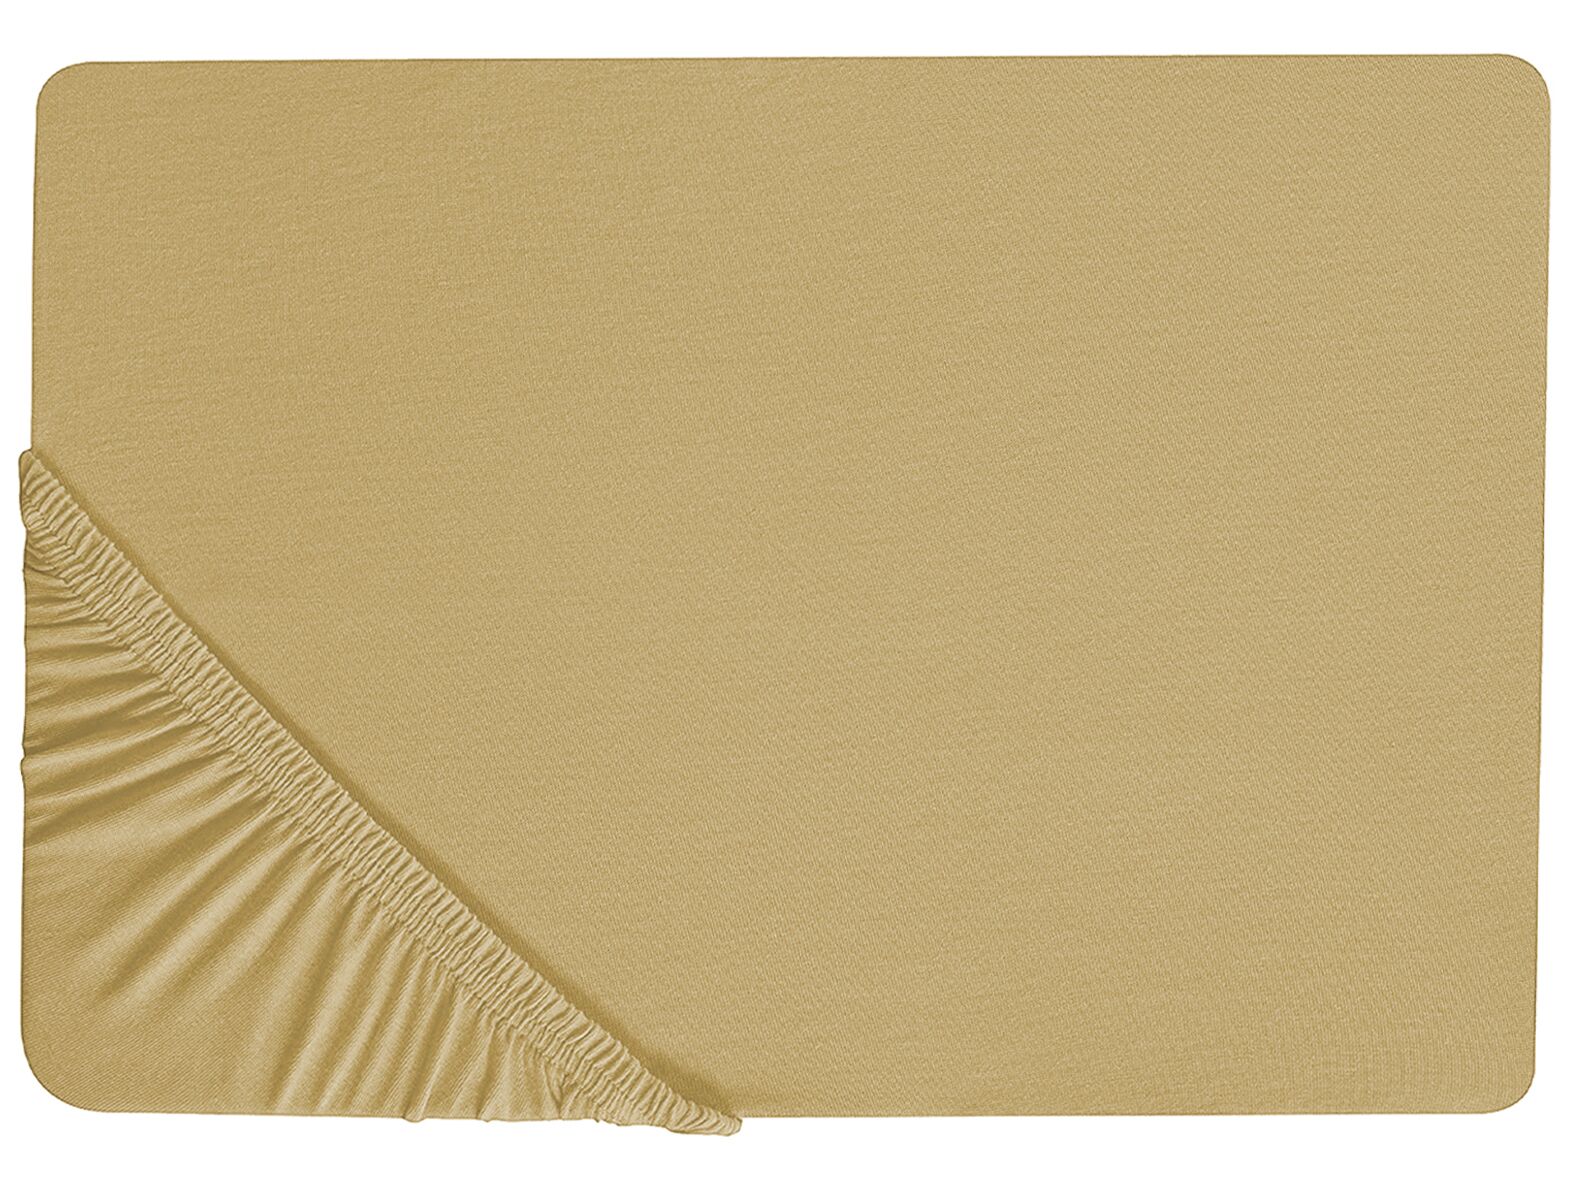 Olivazöld pamut gumis lepedő 180 x 200 cm JANBU_845903